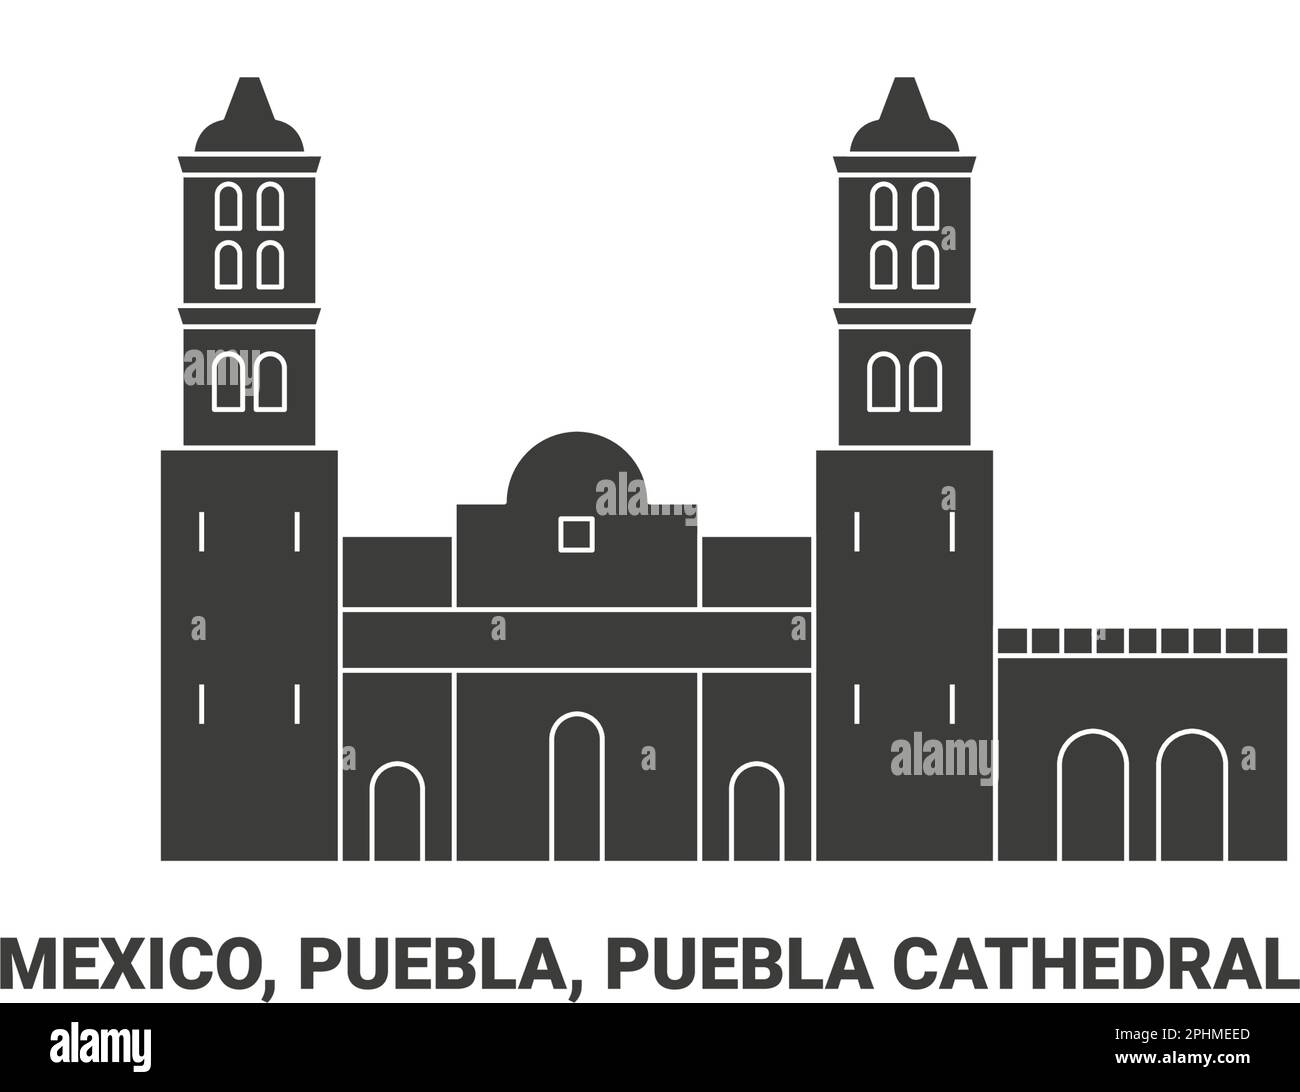 Mexico, Puebla, Puebla Cathedral, travel landmark vector illustration Stock Vector